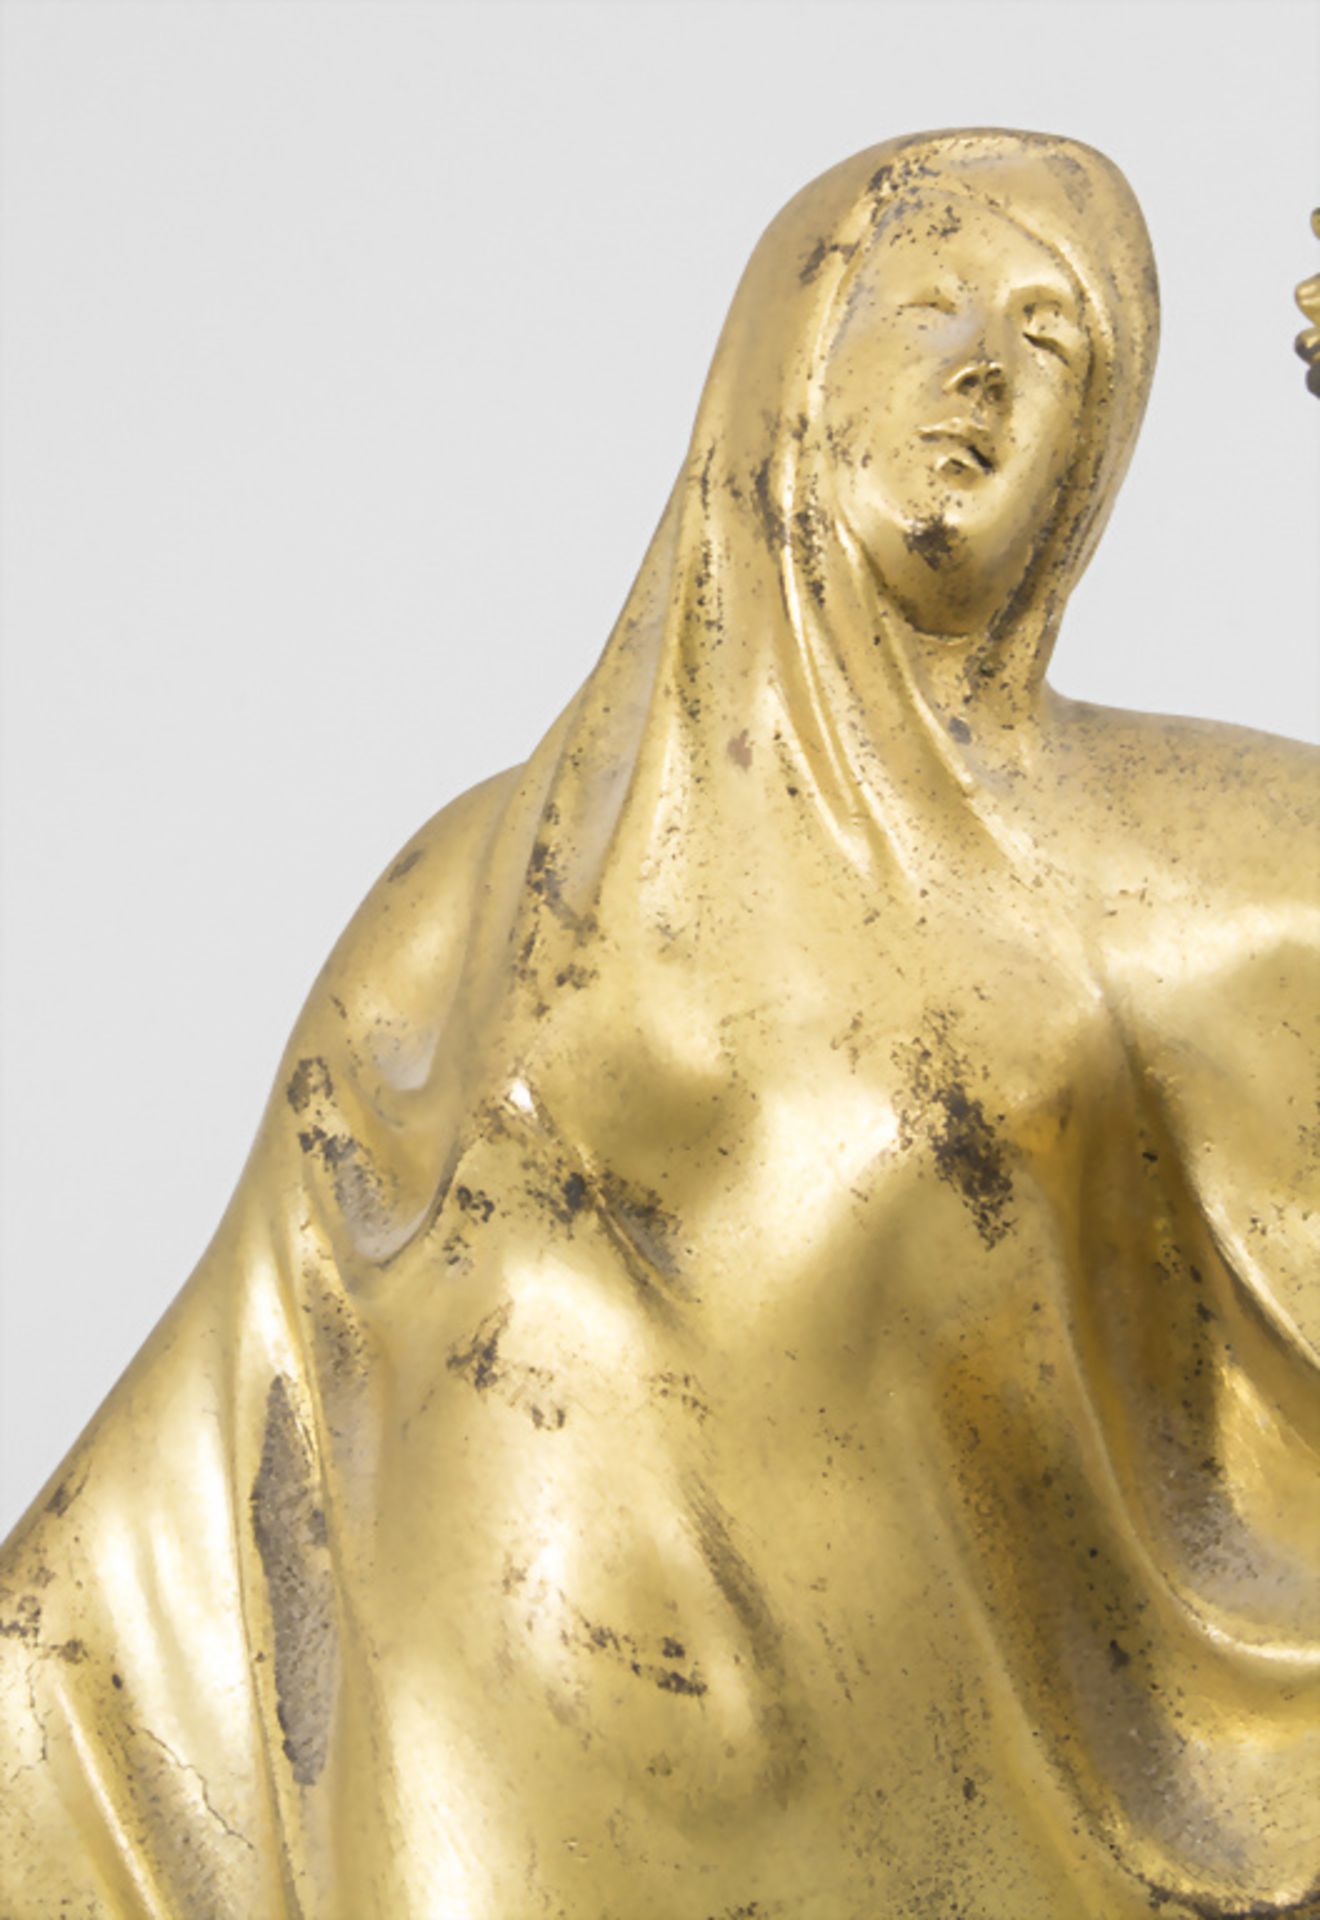 Jugendstil Bronze 'Tanagra Skulptur' / Tanagra sculpture en bronze à patine dorée / An Art ... - Image 5 of 7